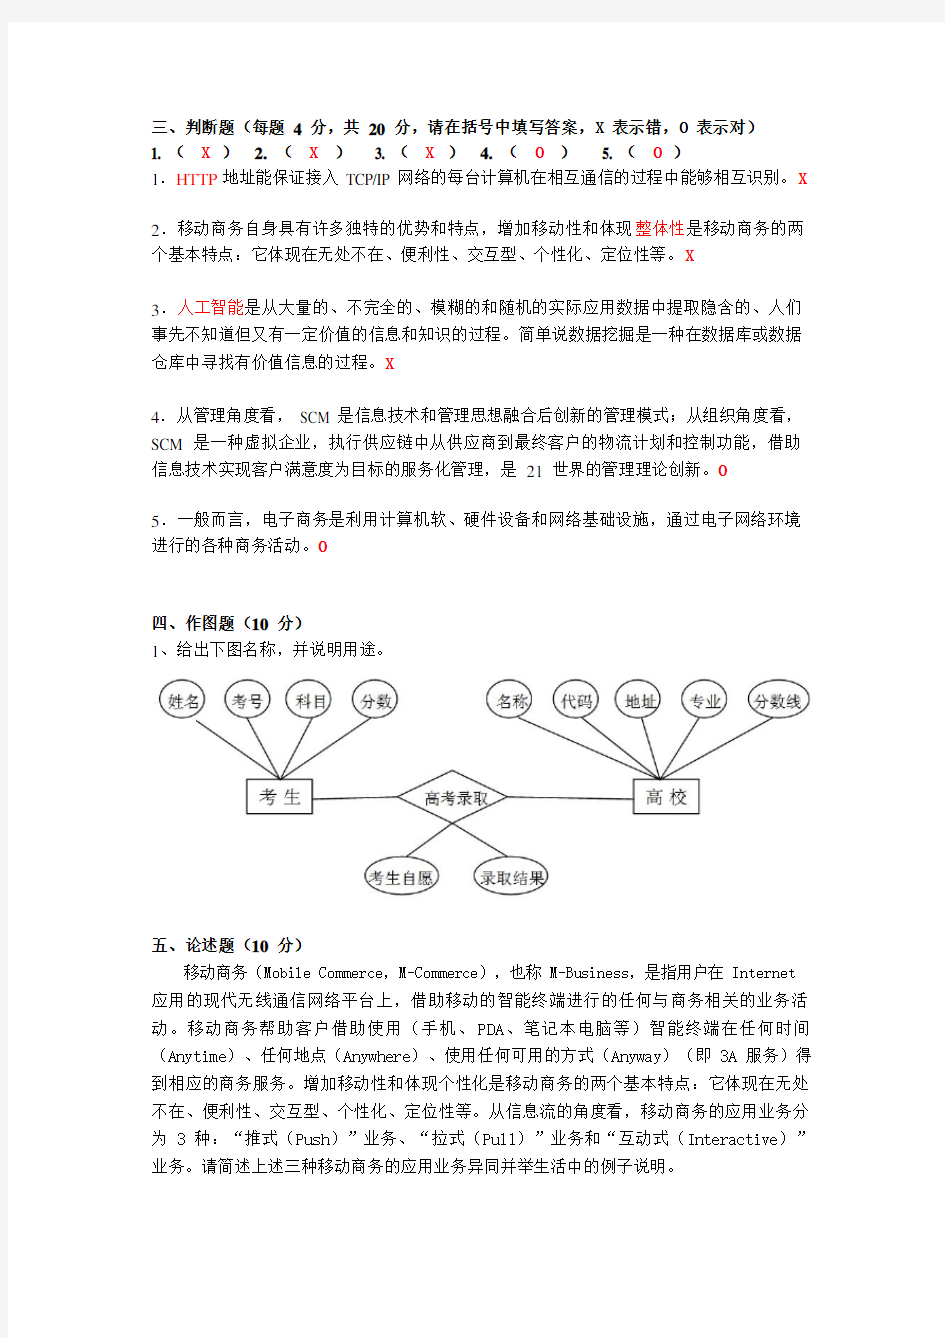 上海交通大学继续教育学院网络教育试题(模拟)资料